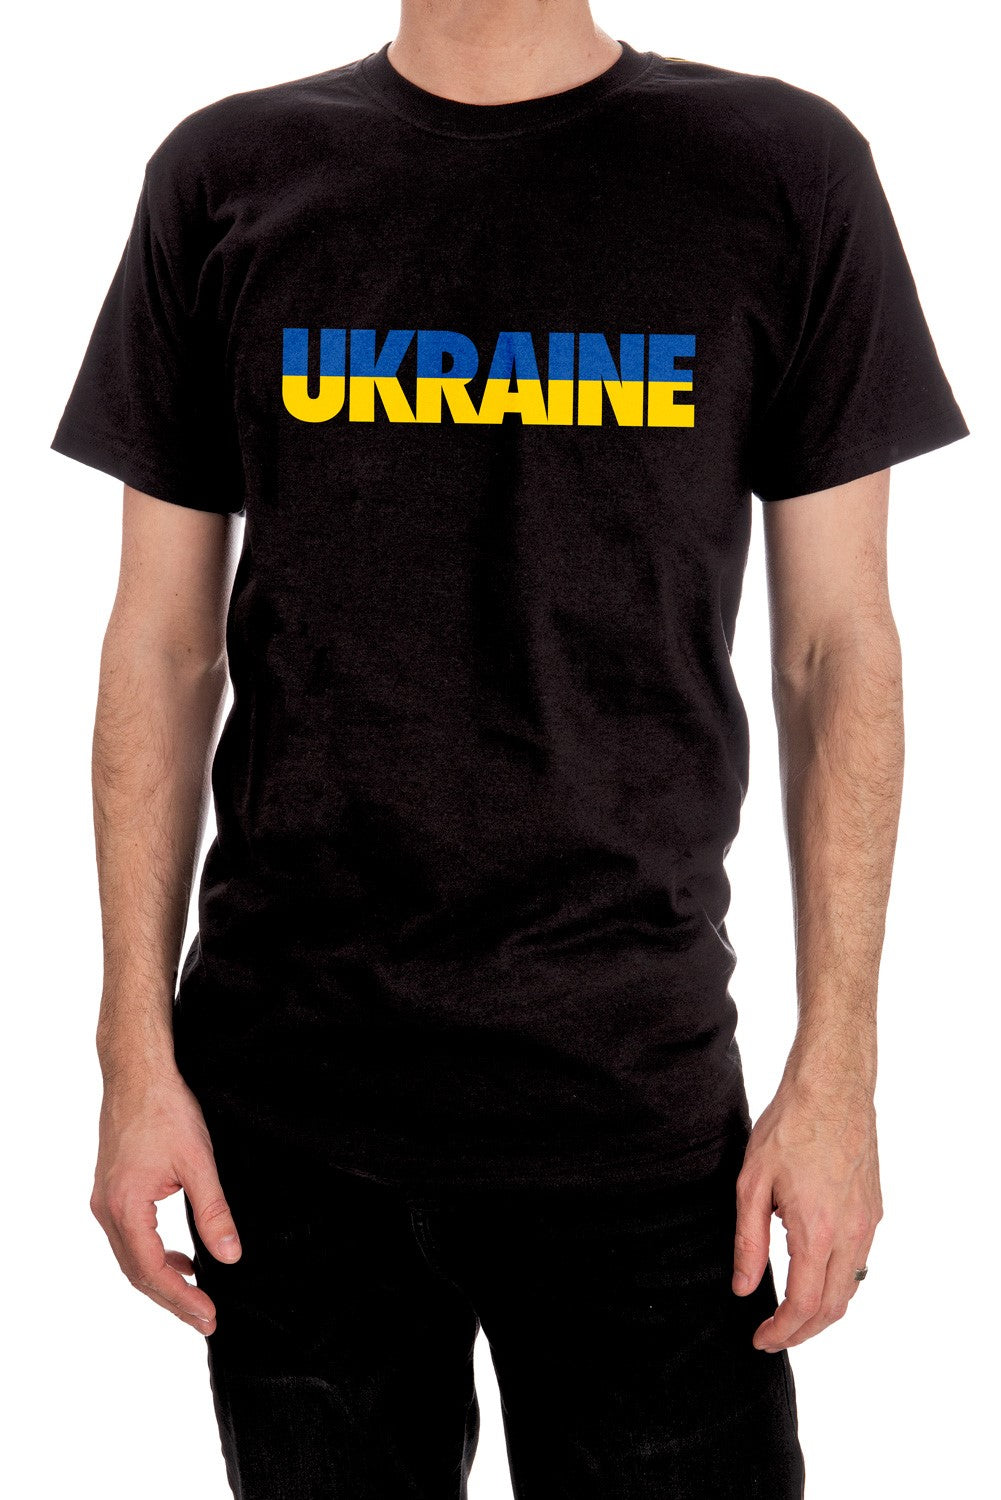 Ukraine T-shirt